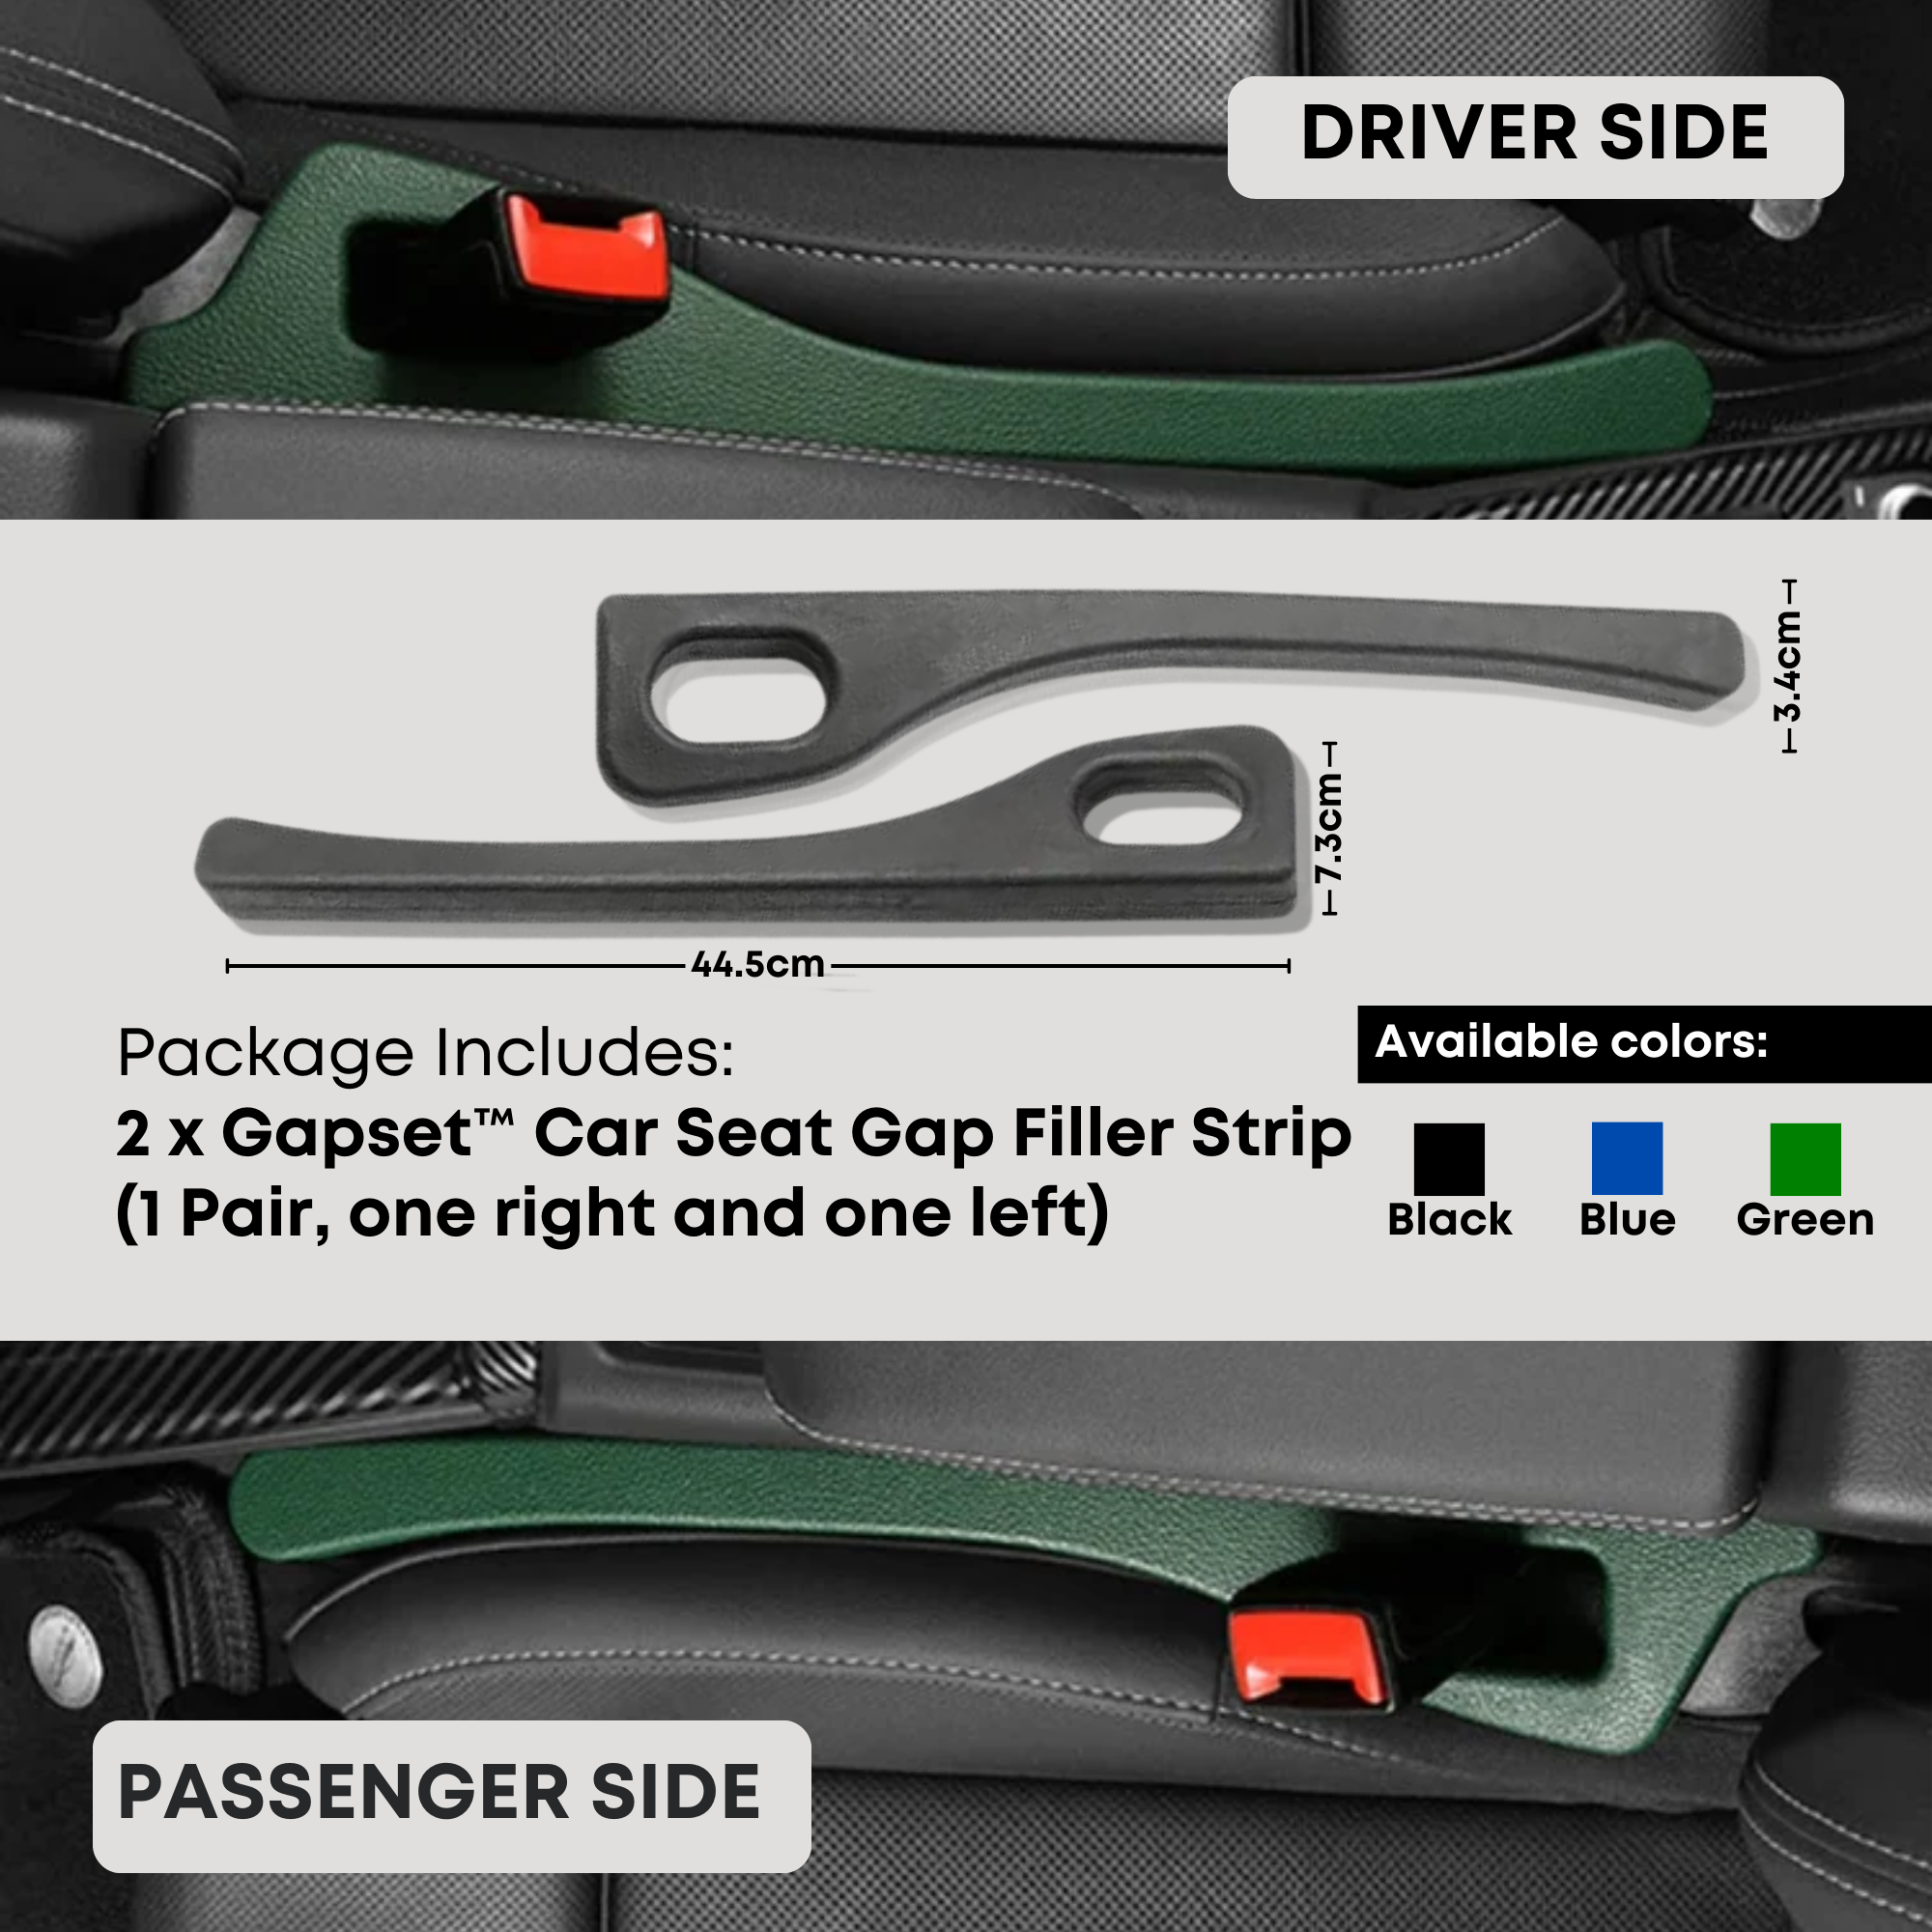 Gapset™ Car Seat Gap Filler Strip | BUY 1 GET 1 FREE (1 PAIR)